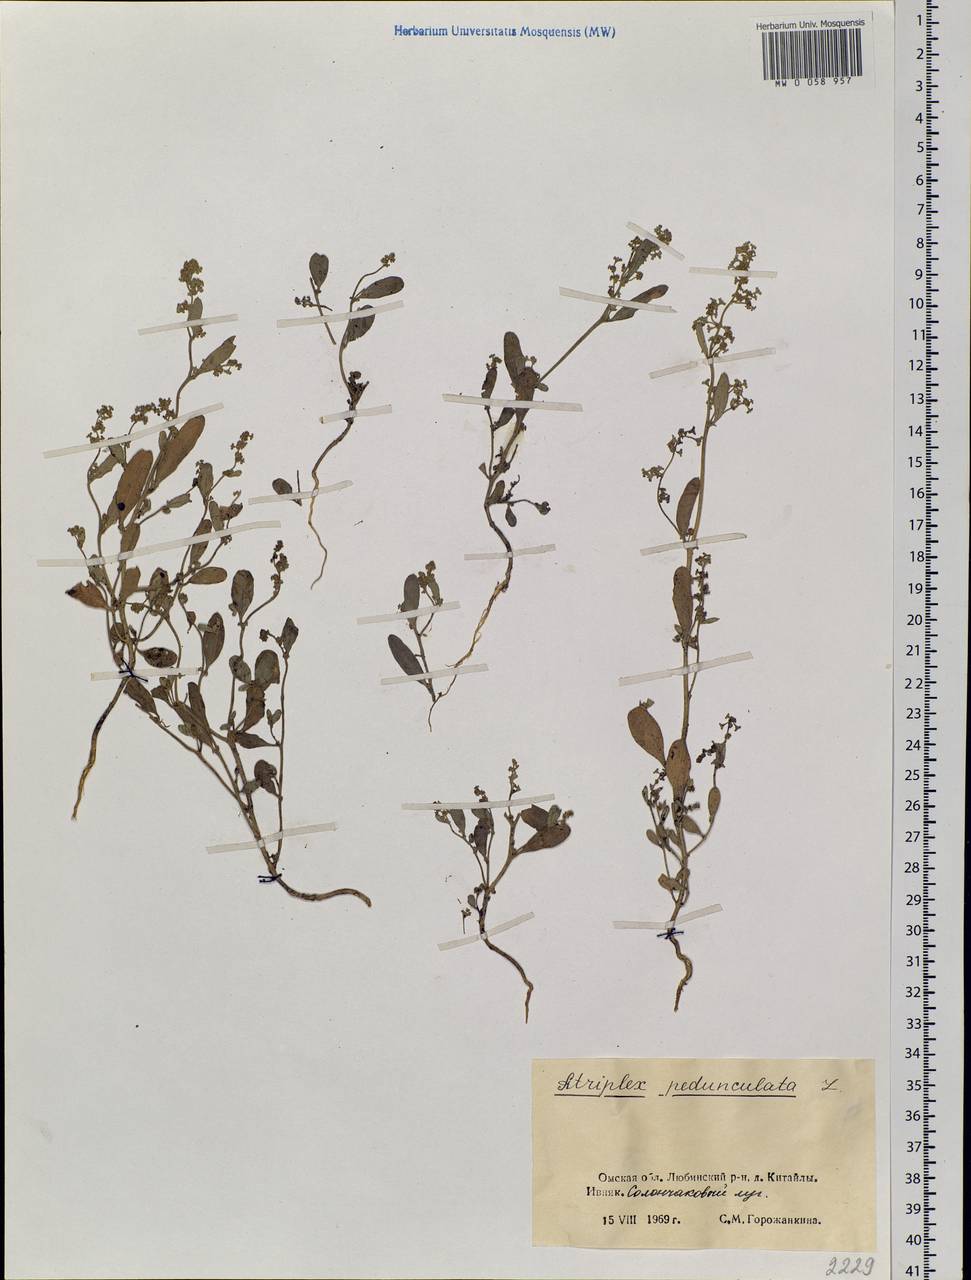 Halimione pedunculata (L.) Aellen, Siberia, Western Siberia (S1) (Russia)